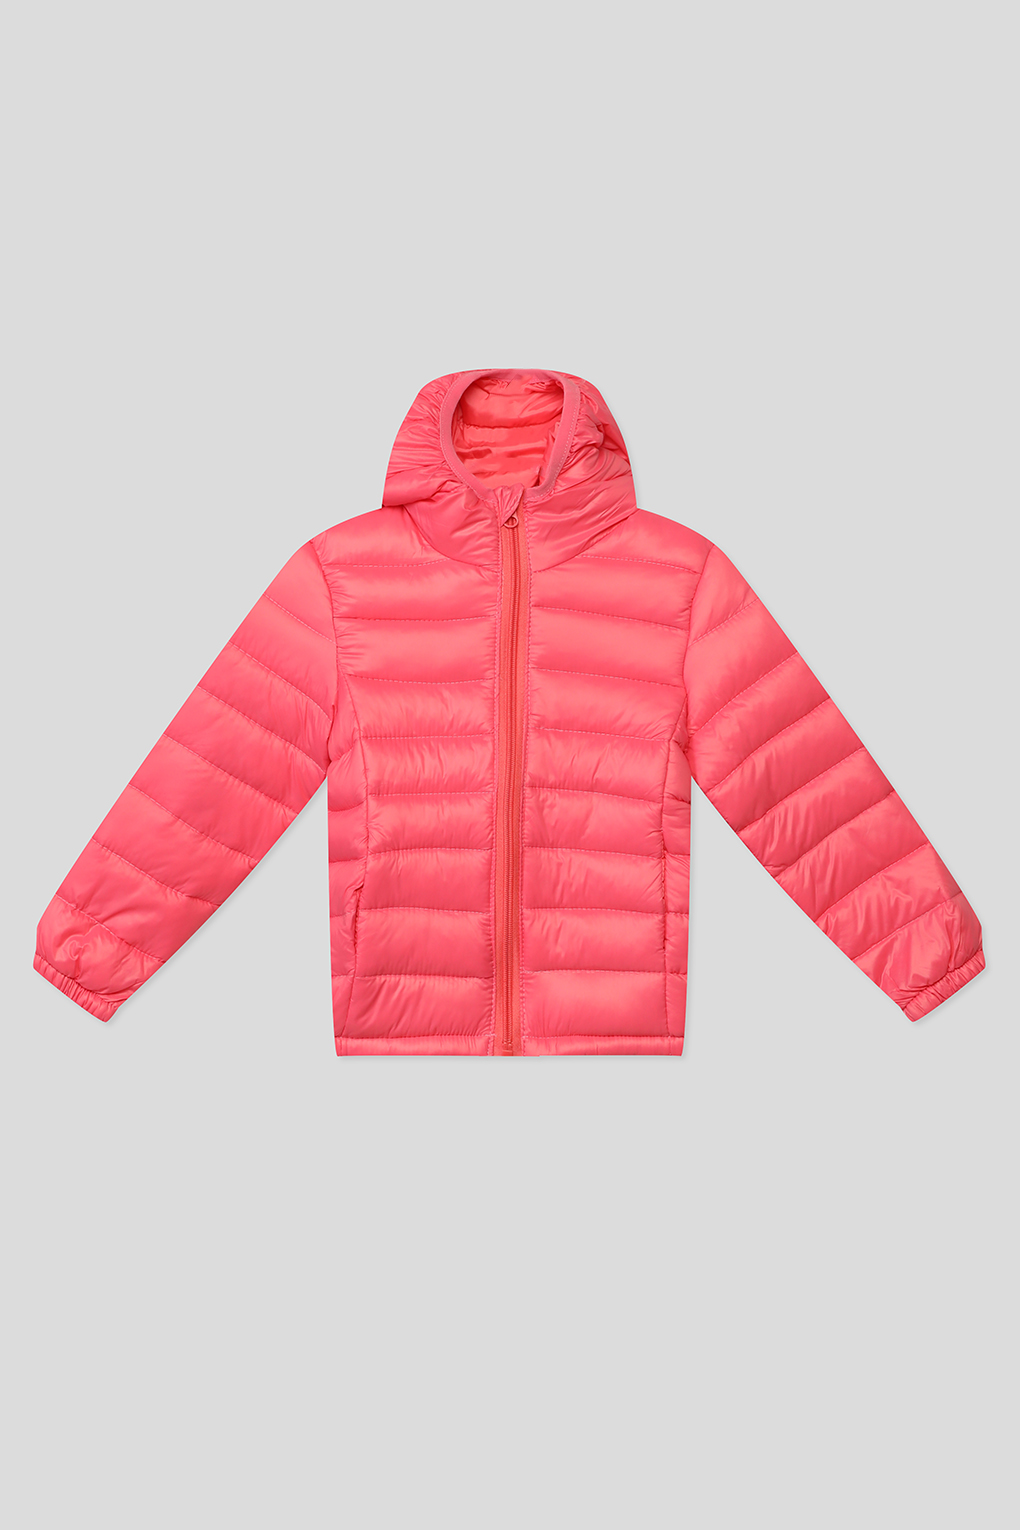 Куртка детская GIOCO G23049253-007 розовый, 122